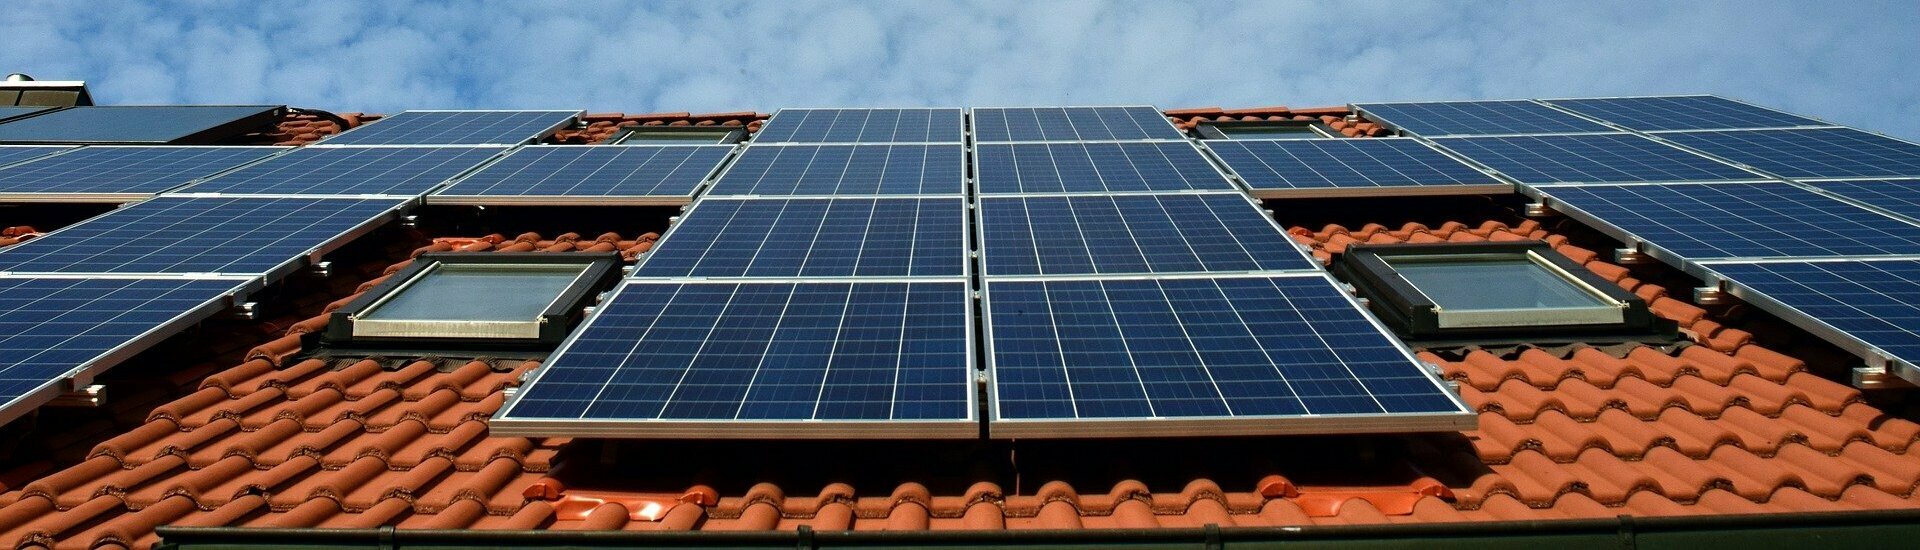 Potentiel solaire toitures